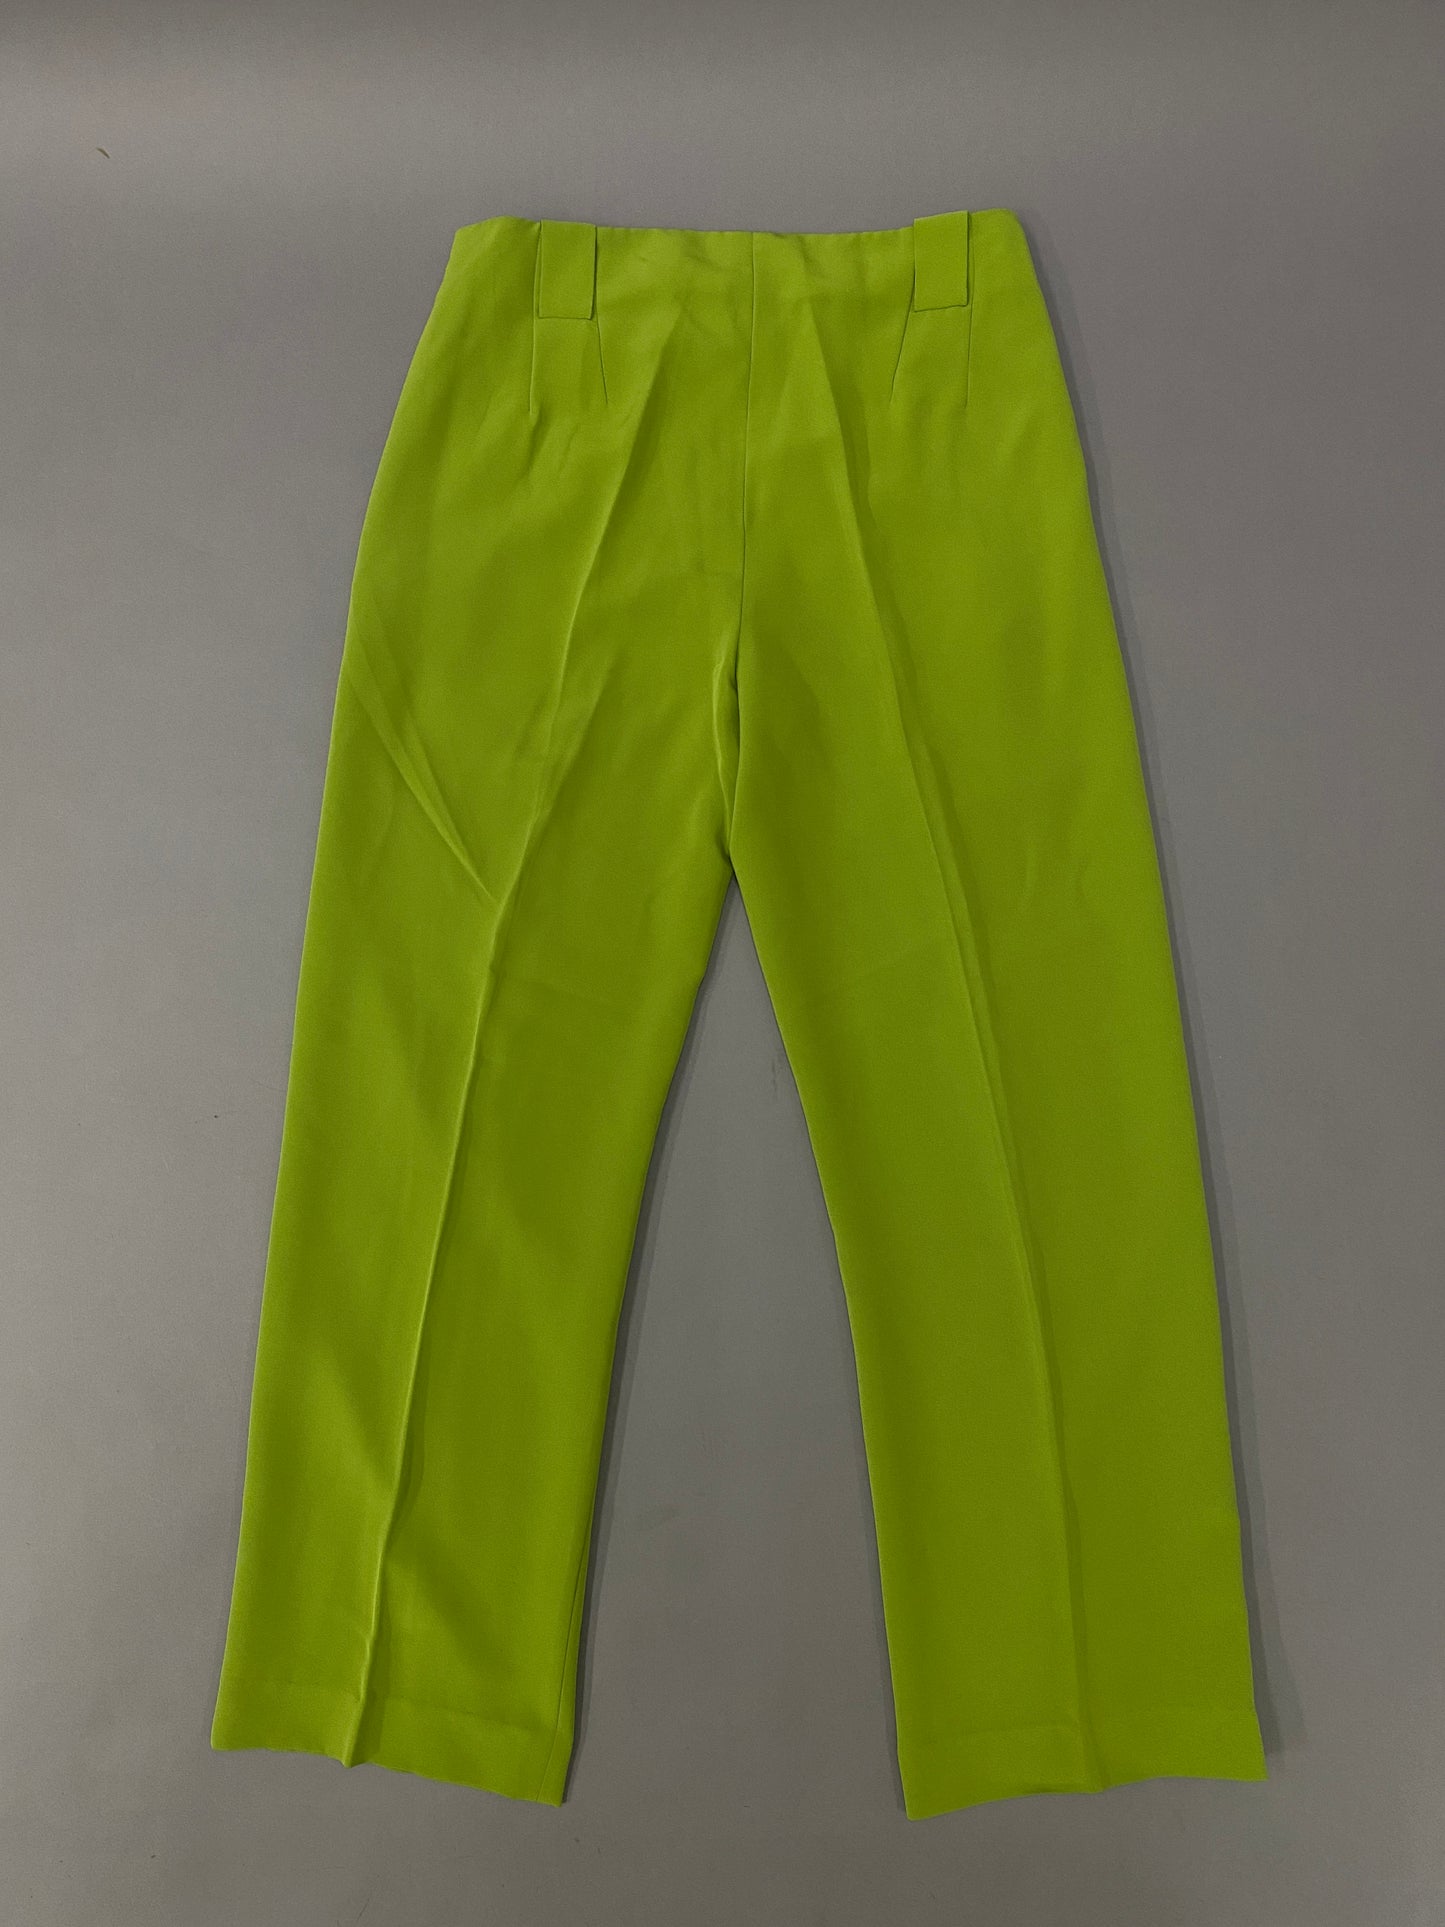 Neon 80's pants - 30